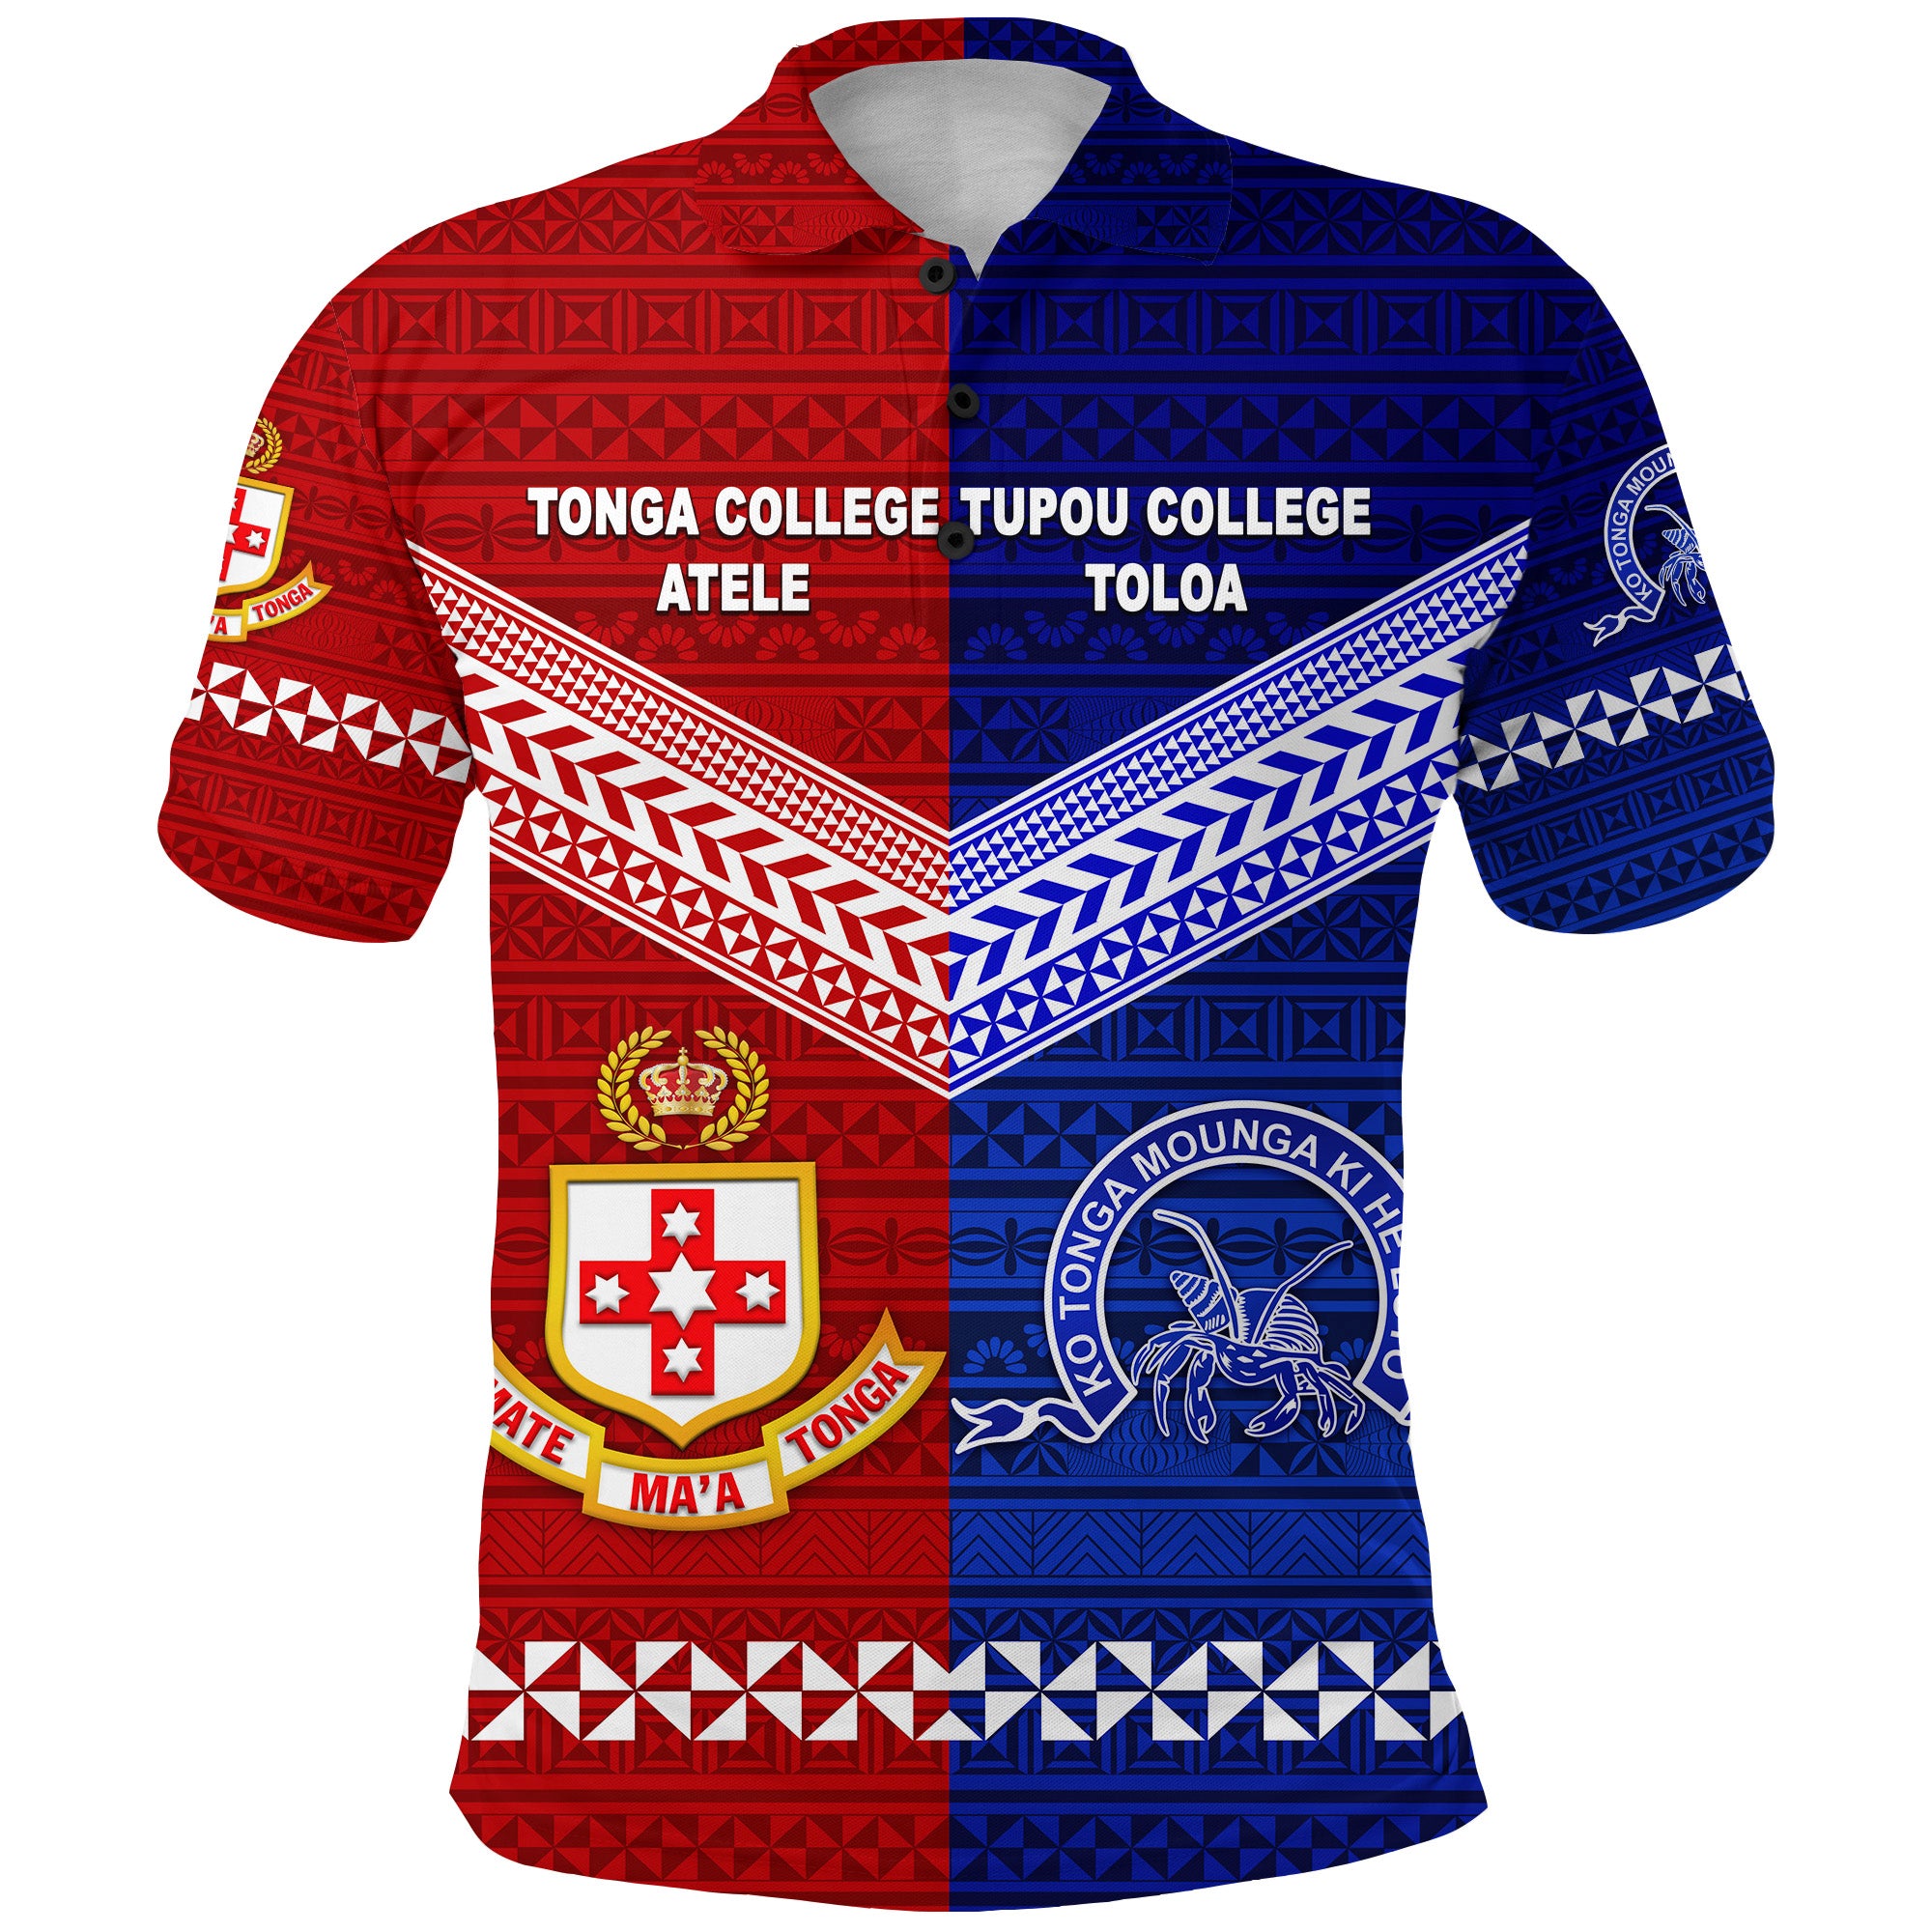 Kolisi Tonga College Atele and Tupou College Toloa Polo Shirt Together Original LT8 - Polynesian Pride